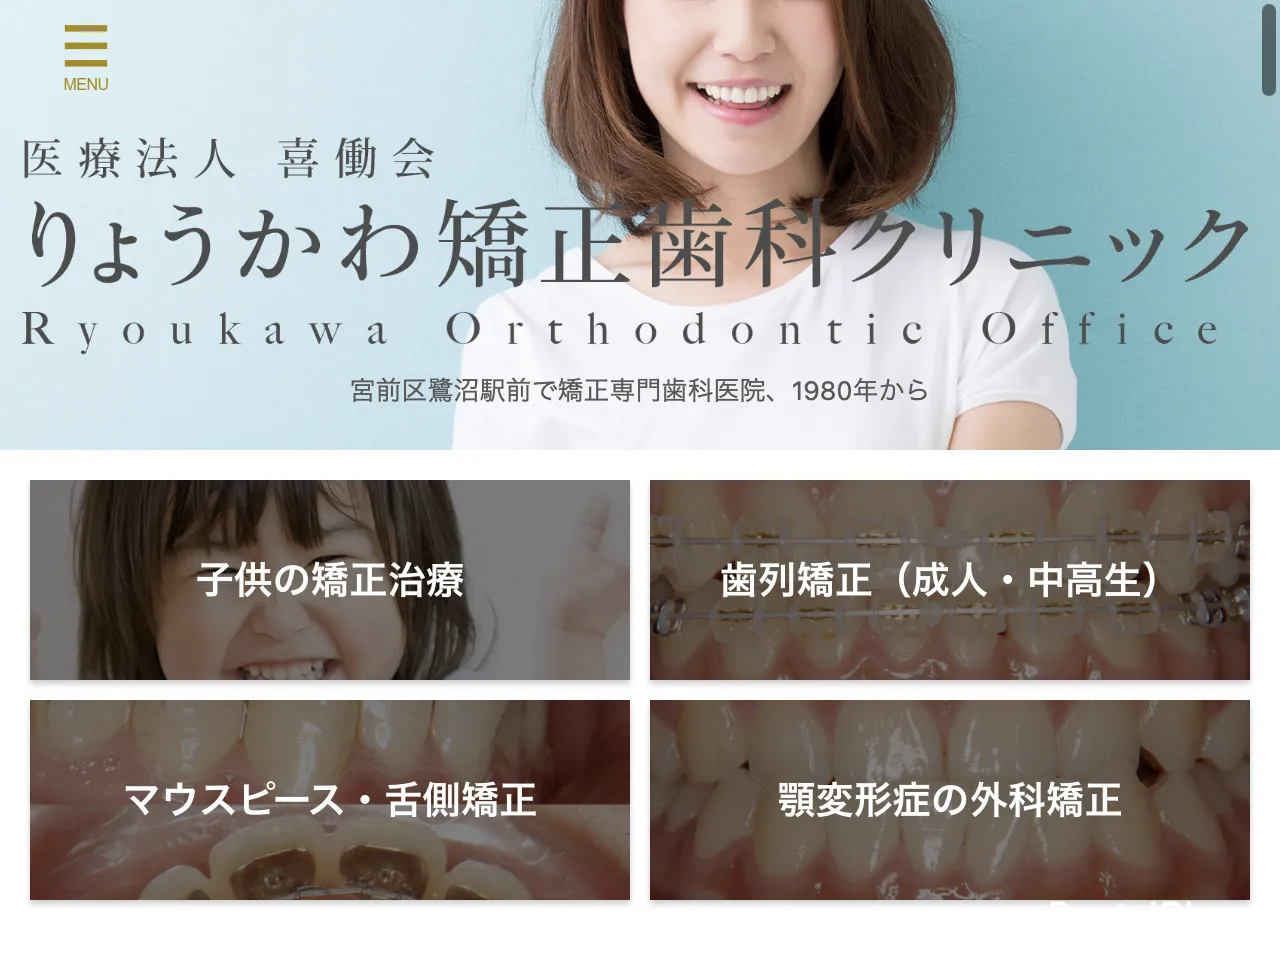 りょうかわ矯正歯科クリニックのウェブサイト